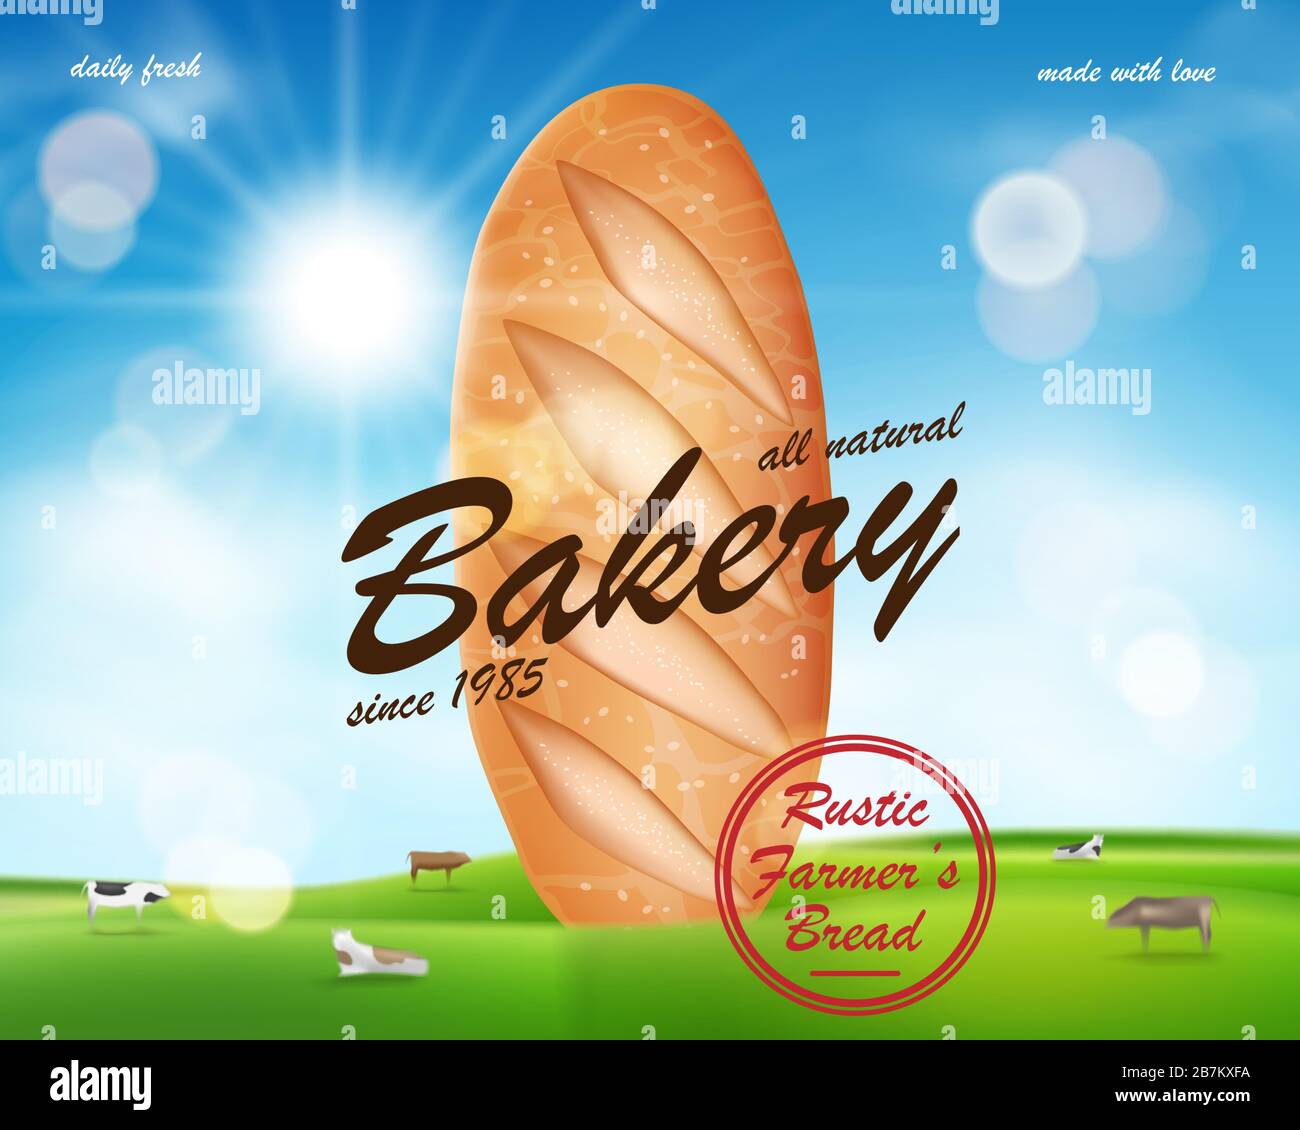 Bannière publicitaire réaliste de boulangerie, délicieux pain français de baguette sur la campagne avec des vaches. Bannière promotionnelle de la boulangerie. Illustration vectorielle Illustration de Vecteur